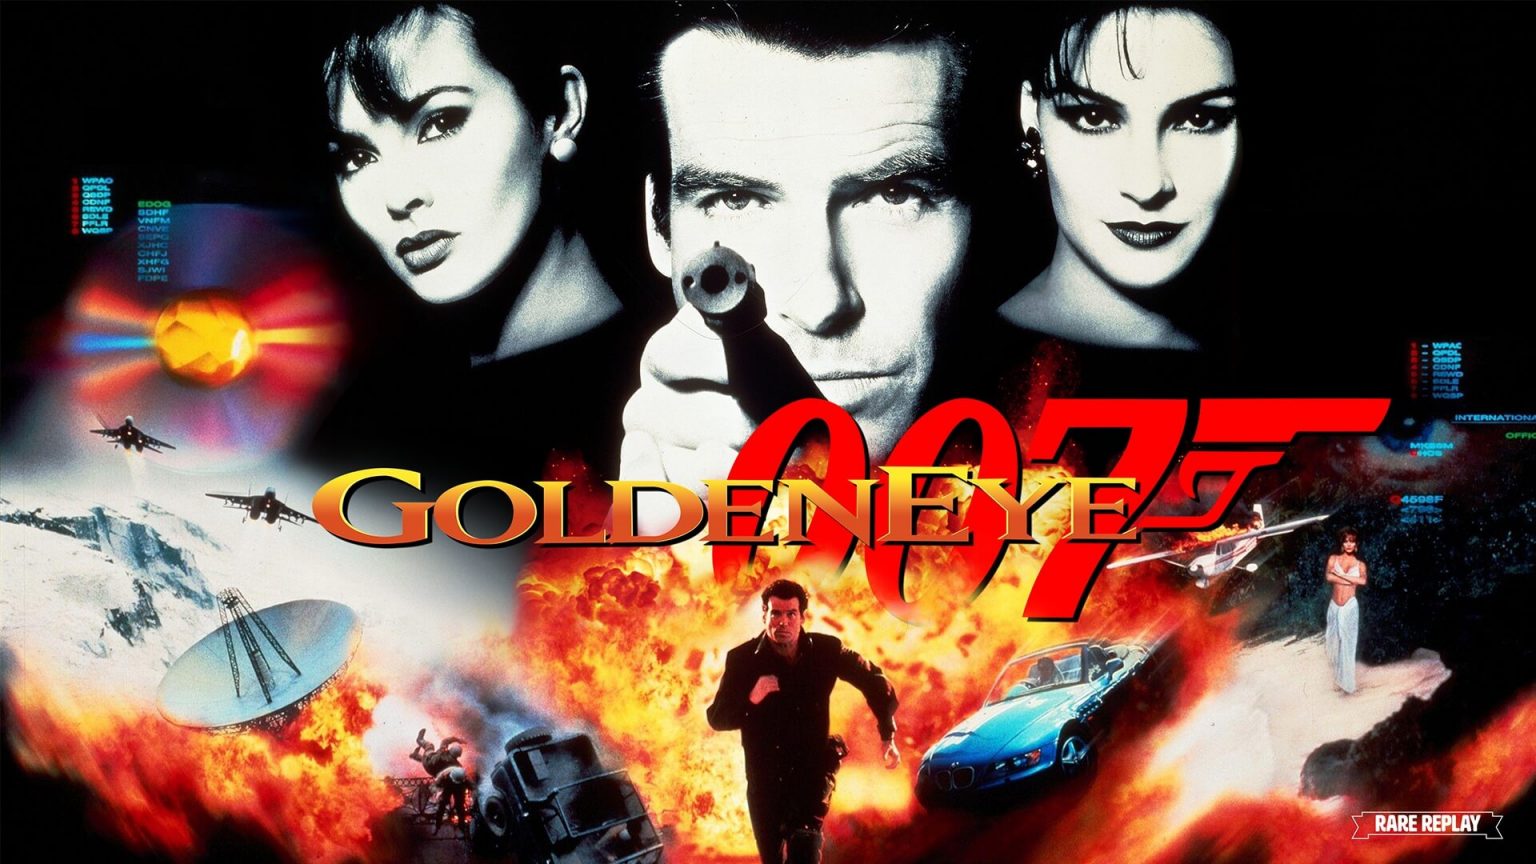 GoldenEye 007 hará su debut en Xbox con una resolución nativa de 16:9 y soporte para hasta 4K Ultra HD En Xbox Game Pass